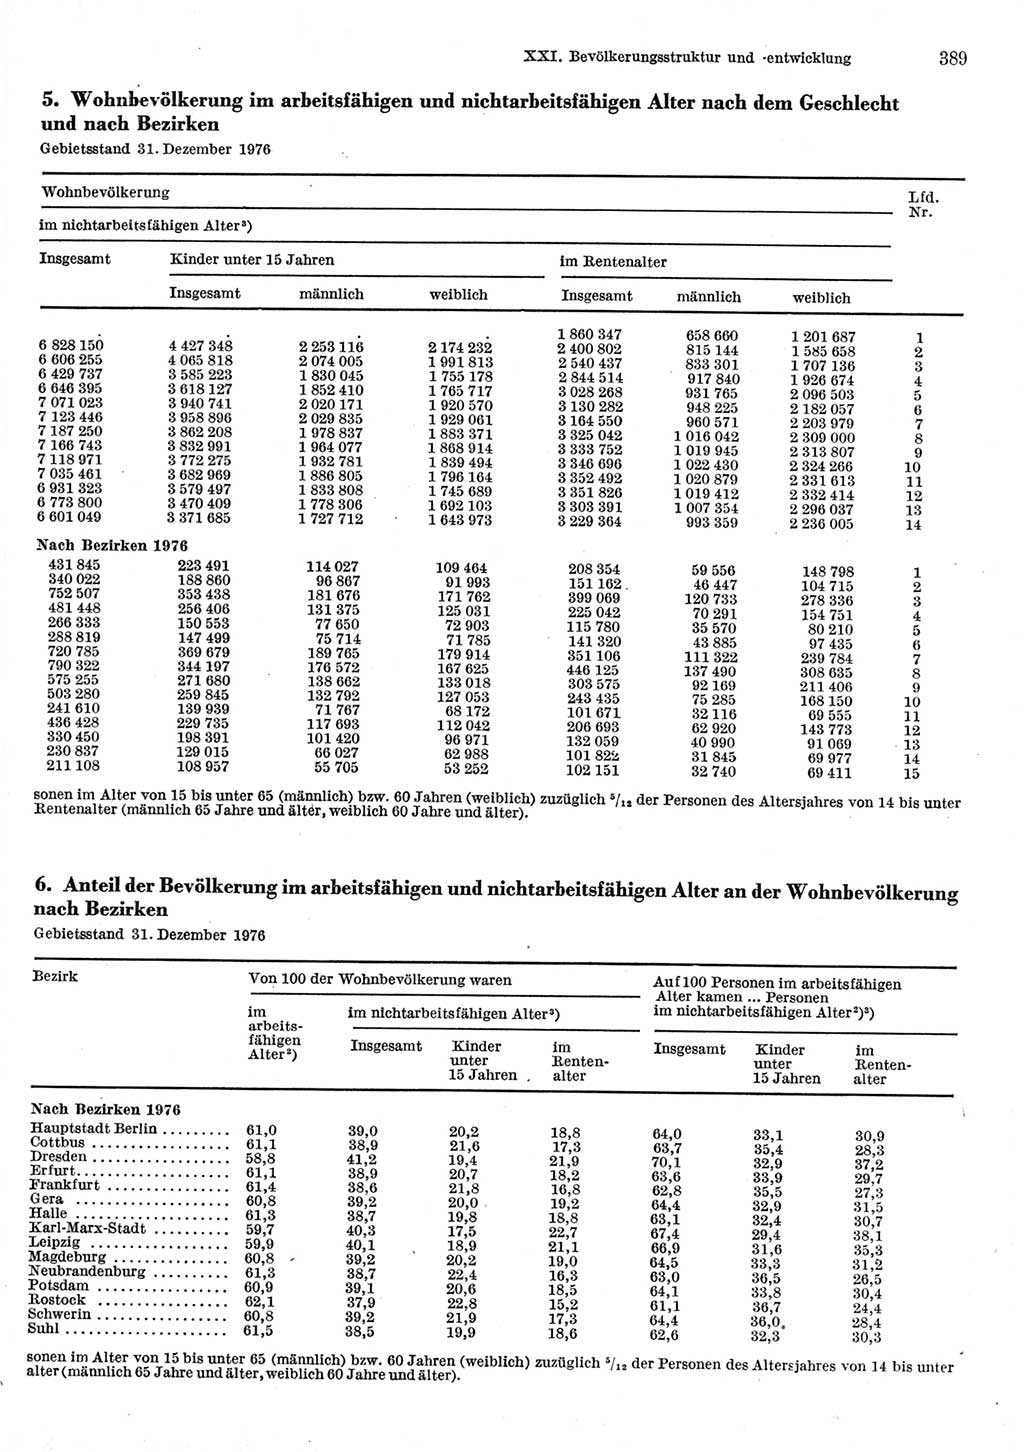 Statistisches Jahrbuch der Deutschen Demokratischen Republik (DDR) 1977, Seite 389 (Stat. Jb. DDR 1977, S. 389)